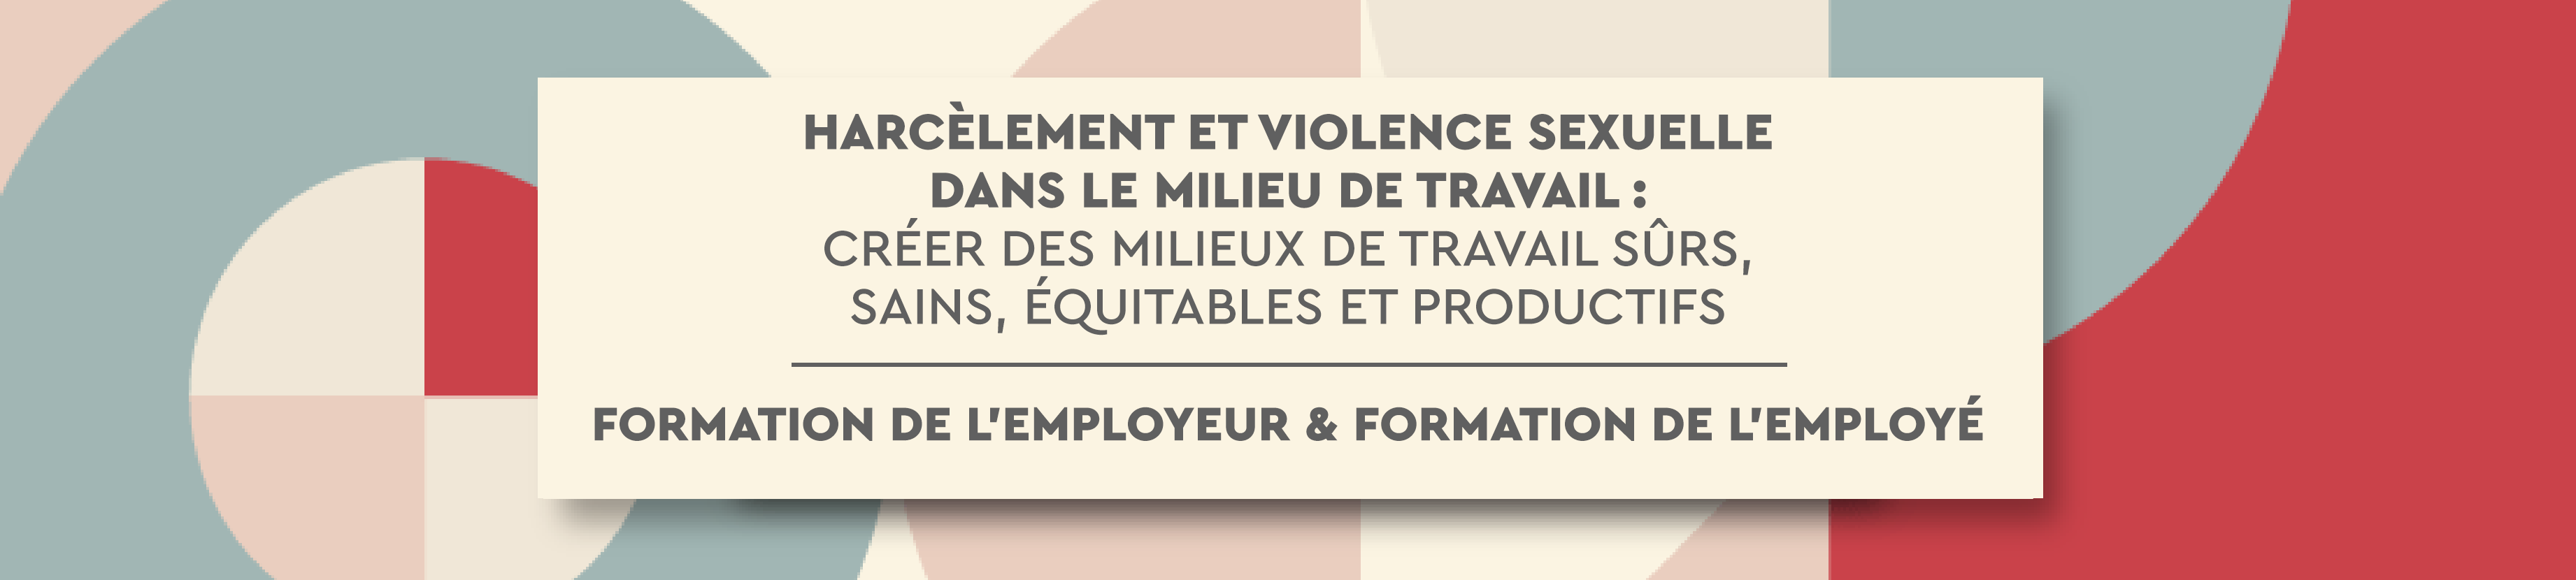 Harcèlement et violence sexuelle dans le milieu de travail : créer des milieux de travail sûrs, sains, équitables et productifs